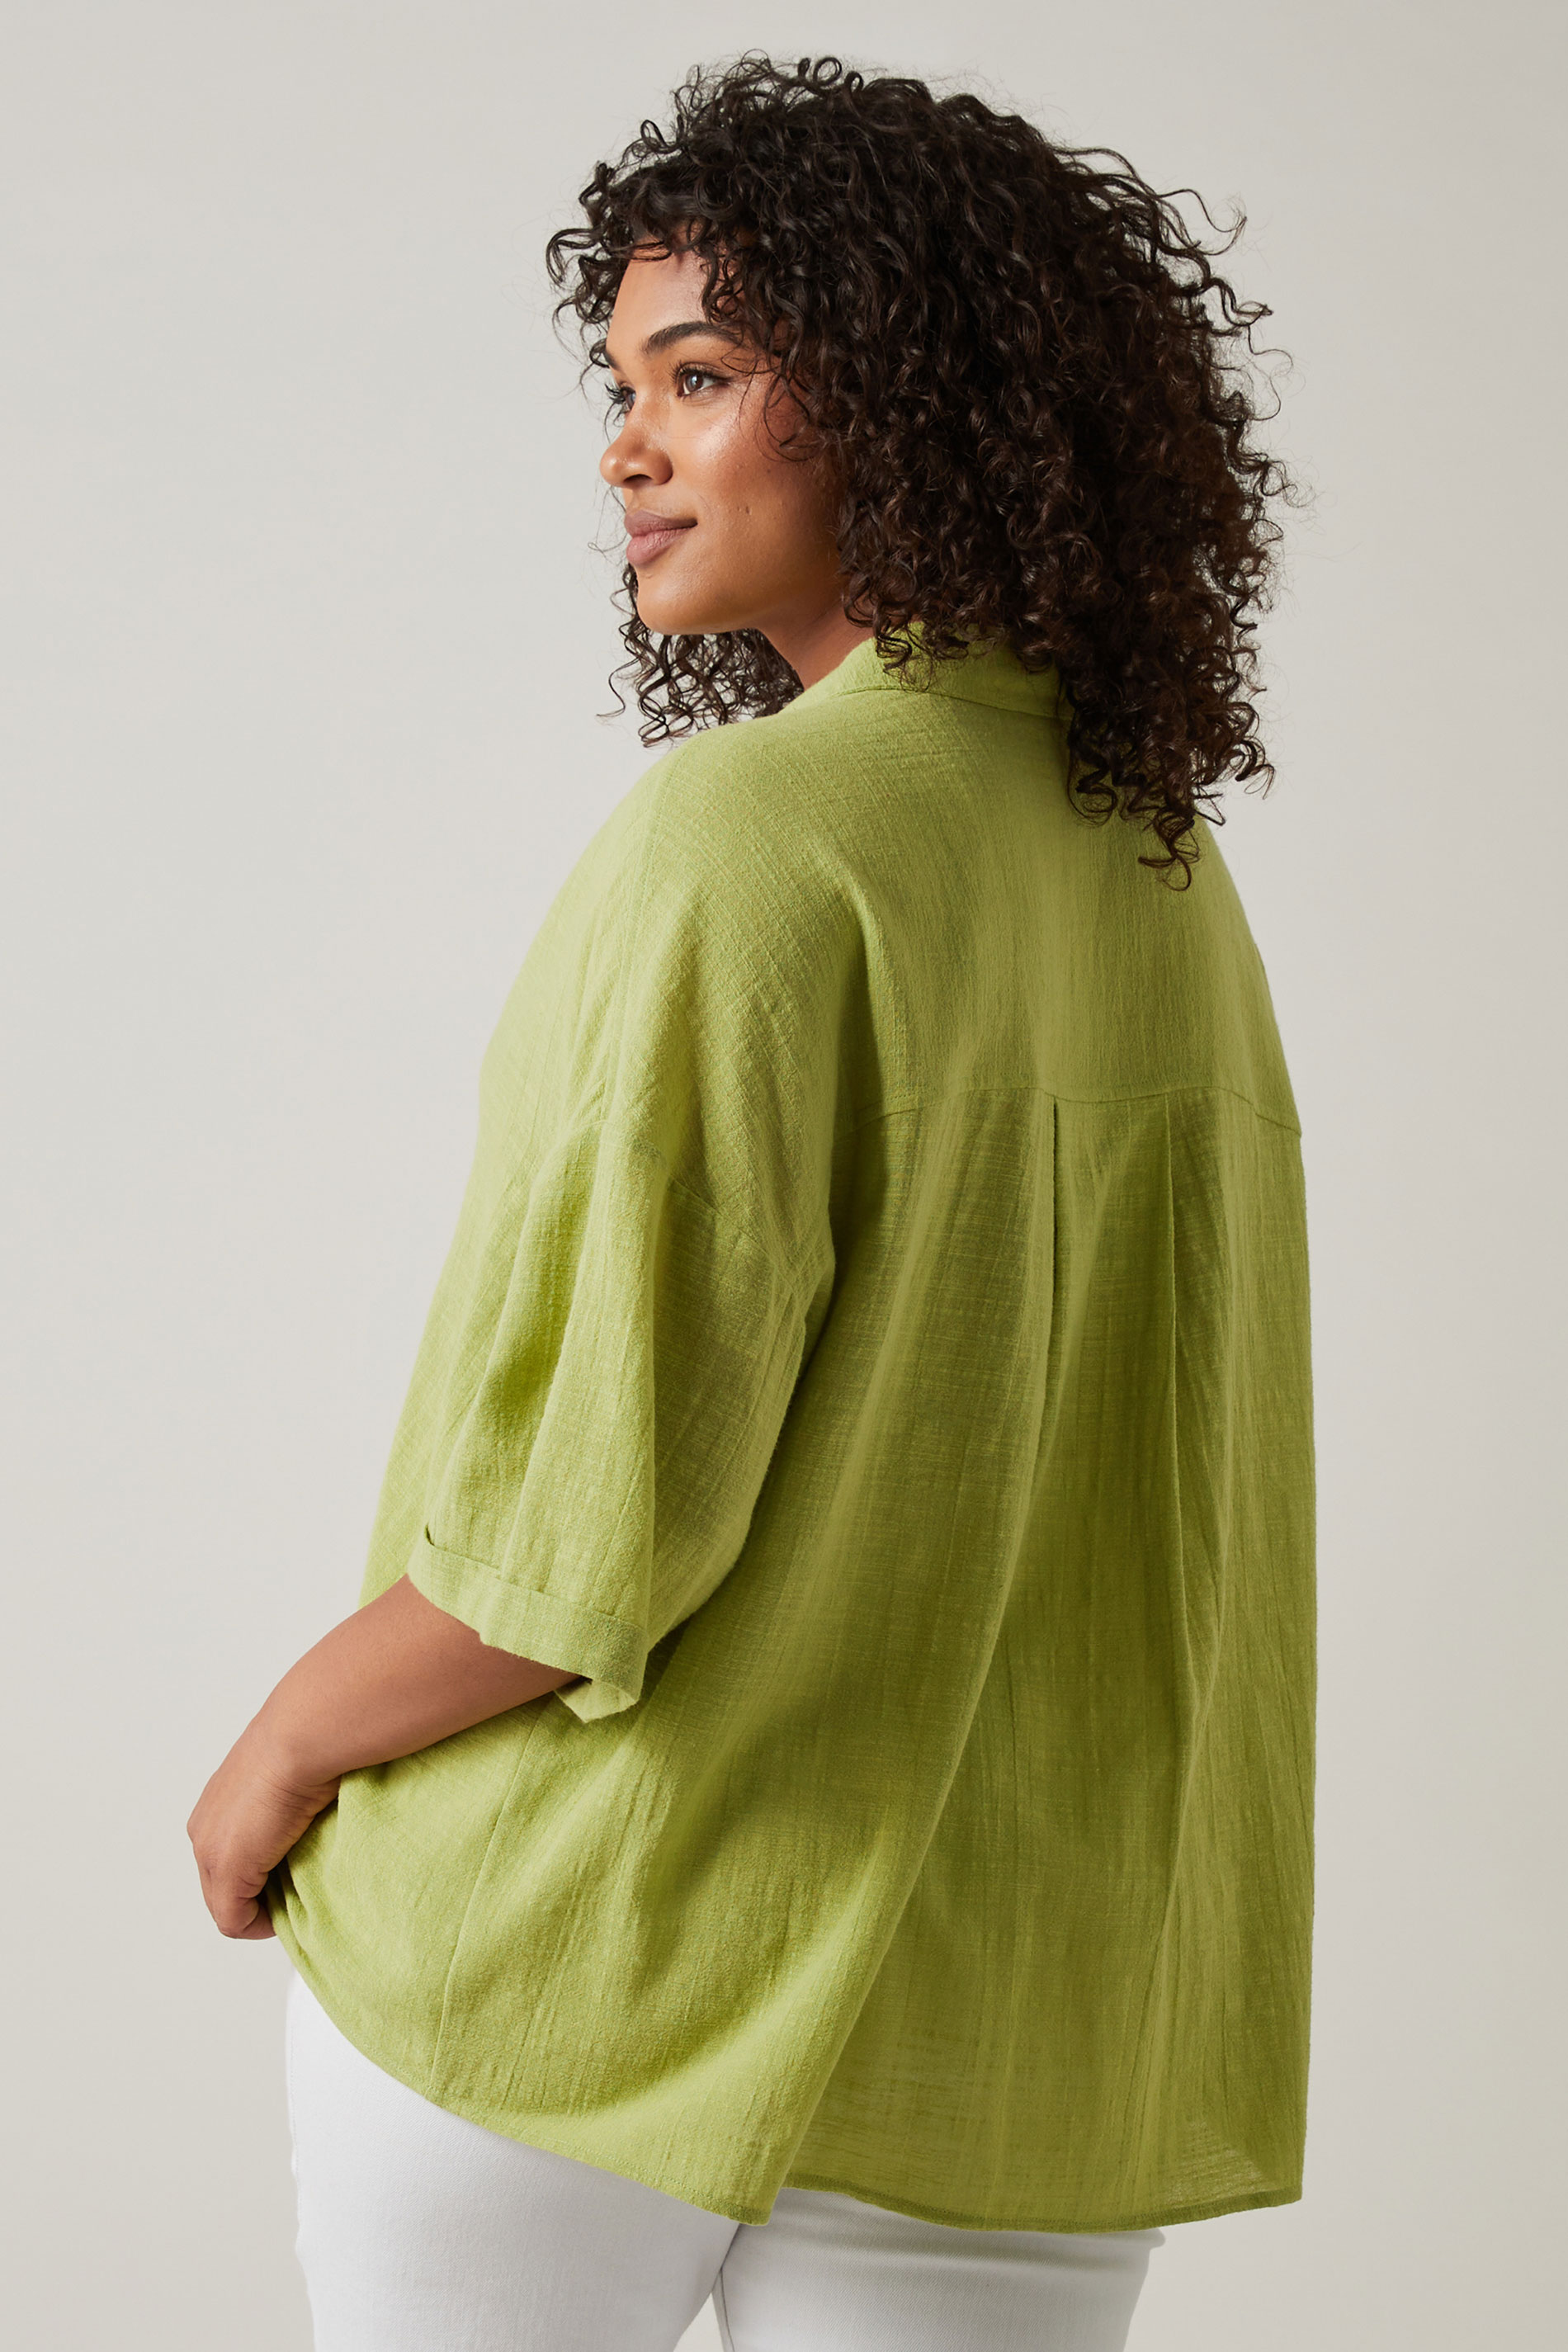 EVANS Plus Size Chartreuse Green Cotton Shirt | Evans 3